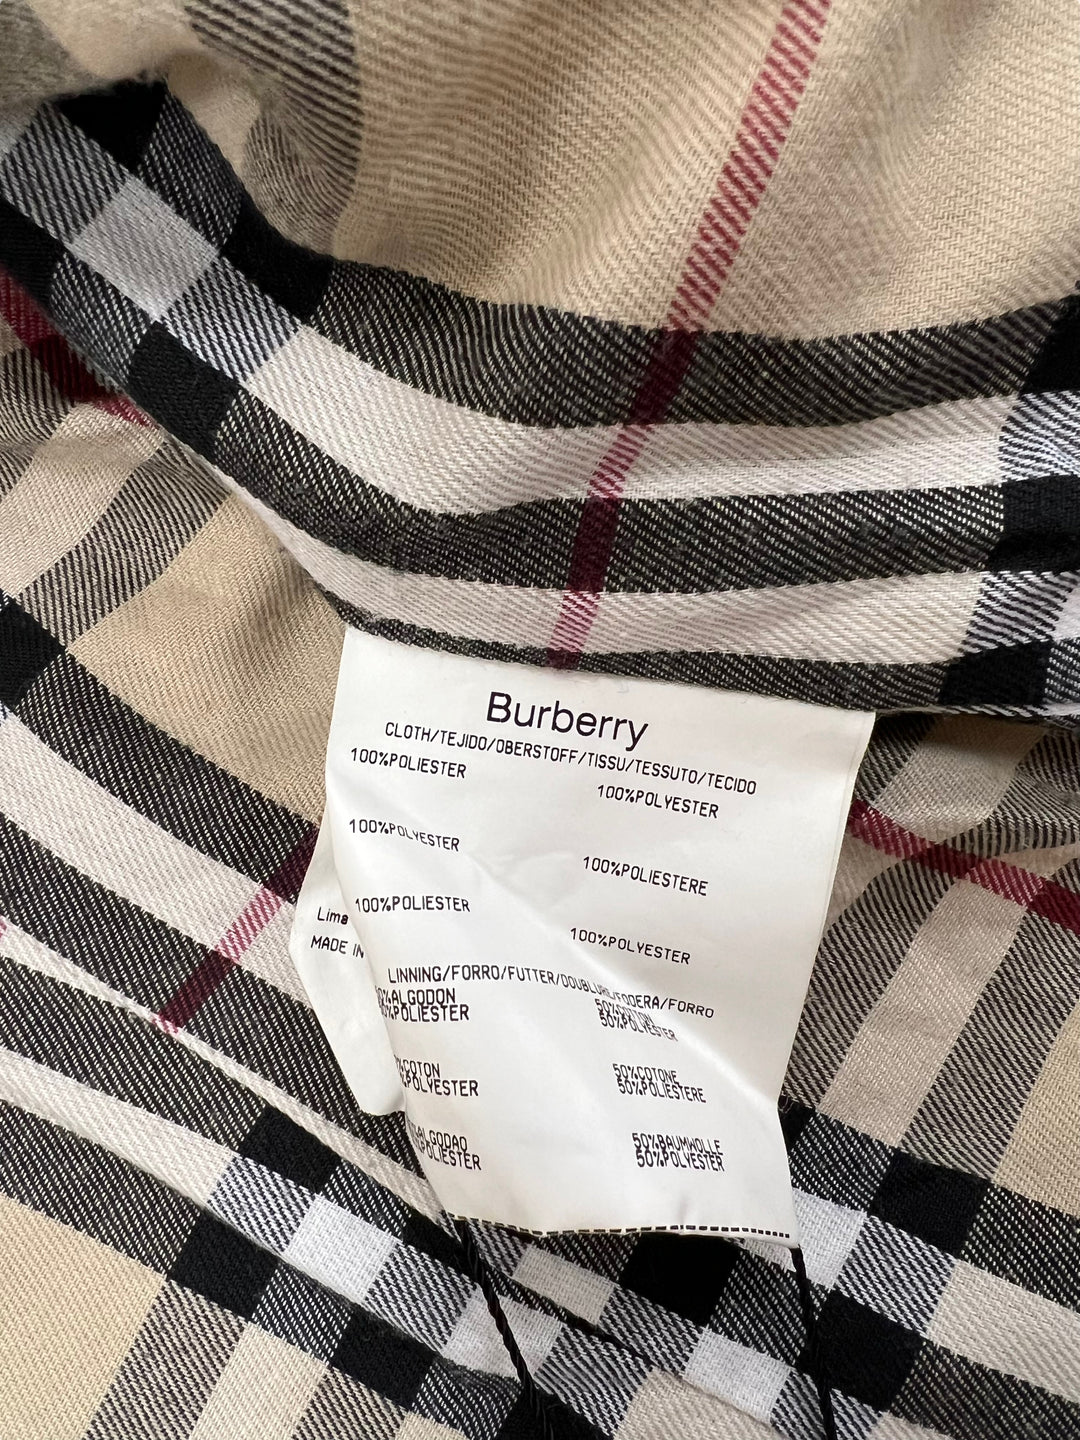 Burberry Quilted Coat Women’s Medium